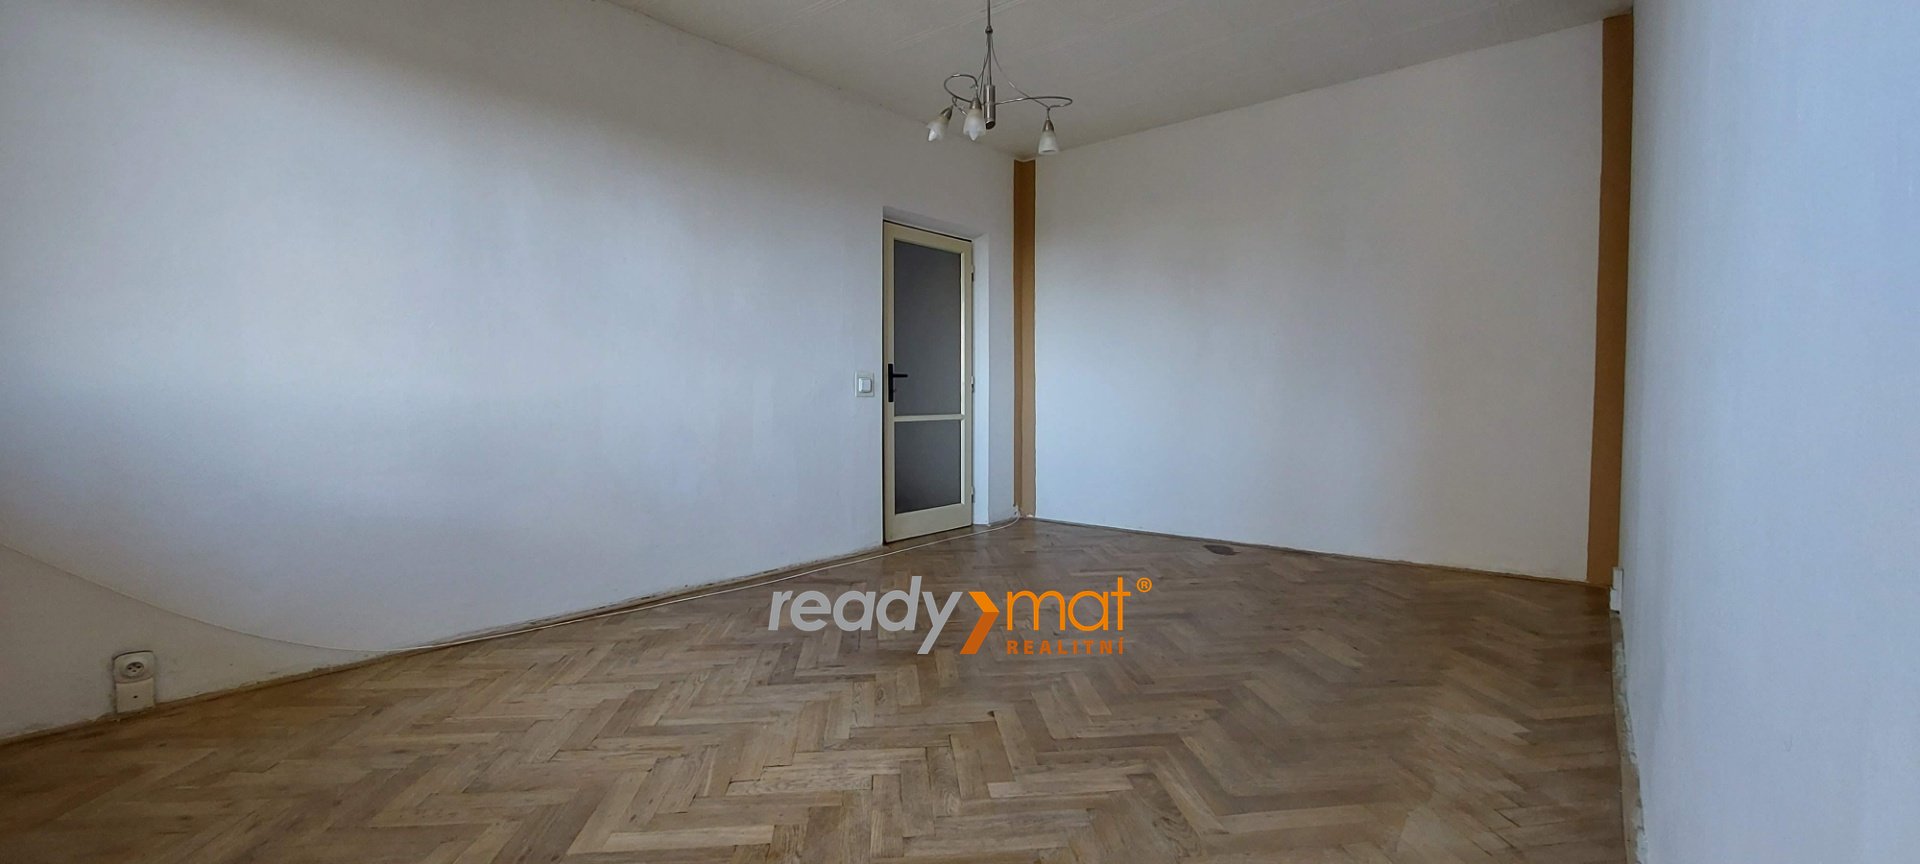 Pronájem, Byty 1+1, 37 m² – Hodonín - ready-mat realitní